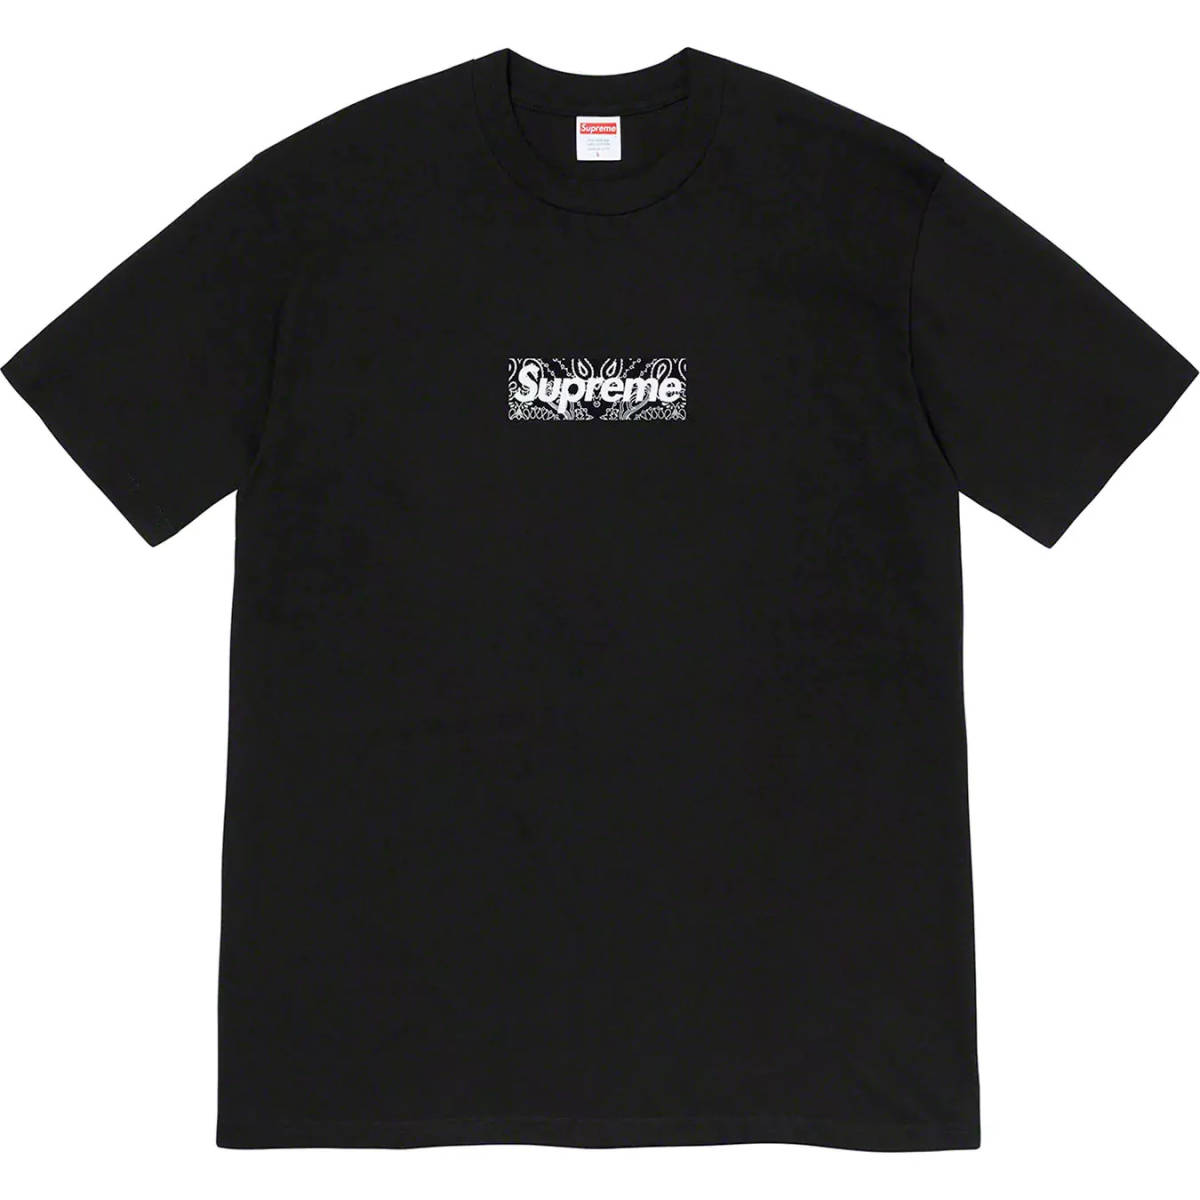 最も  【国内正規新品S】19AW Supreme Bandana Box Logo Tee Small Black 19FW シュプリーム バンダナ ボックス ロゴ ブラック 黒 Tシャツ Sサイズ以下